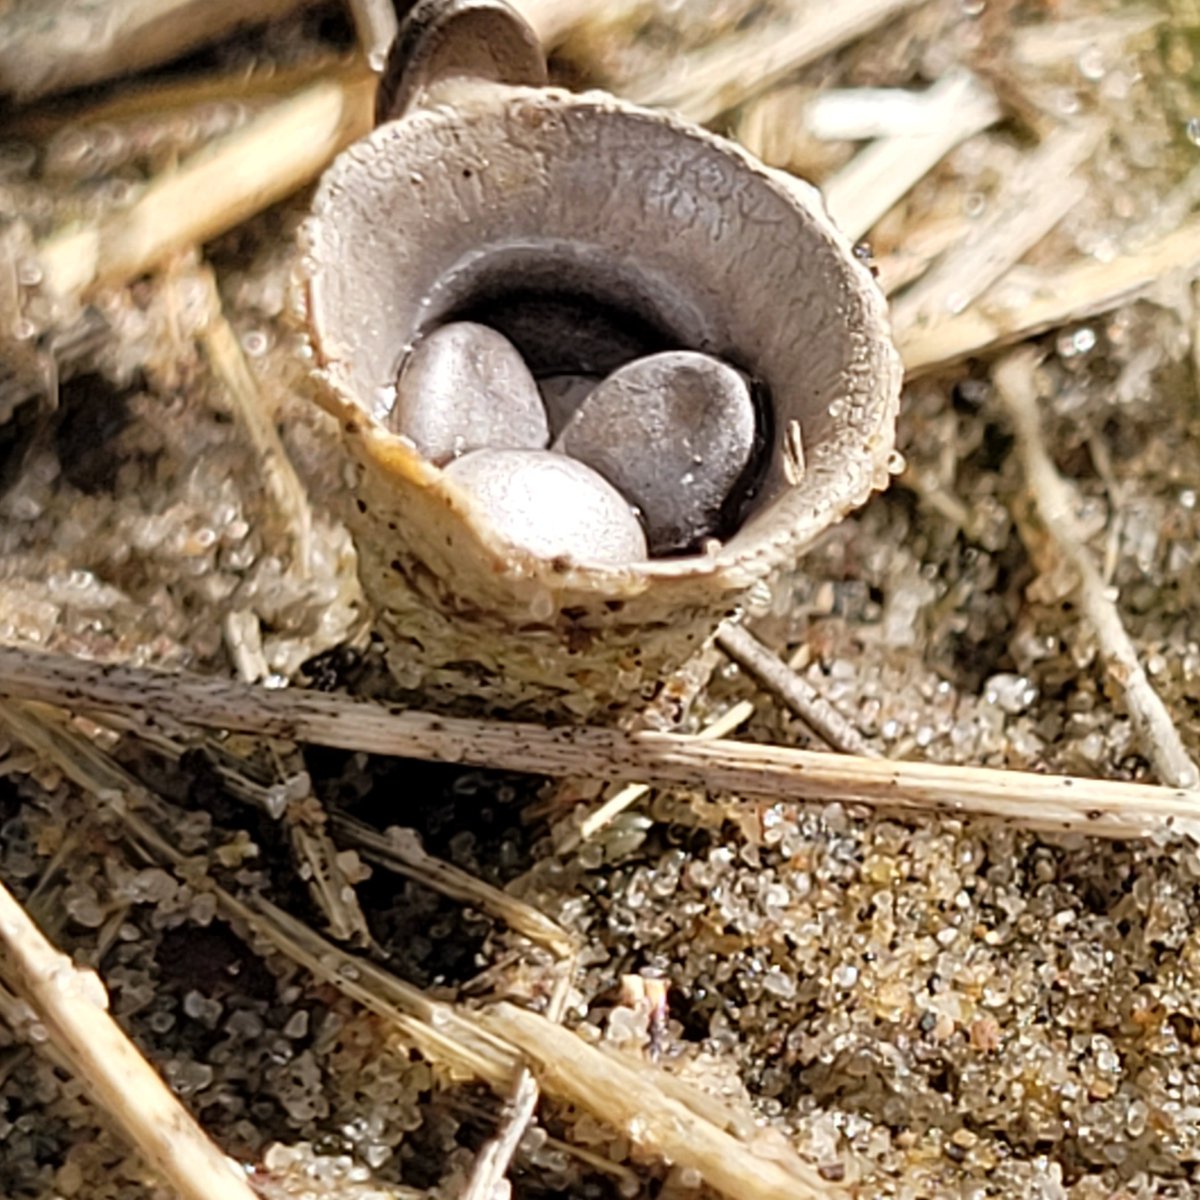 Common Birds-nest #fungus from Dawlish Warren dunes. A small masterpiece 
#fungi #mycology #fantasticfungi #macrophotography #NaturePhotography